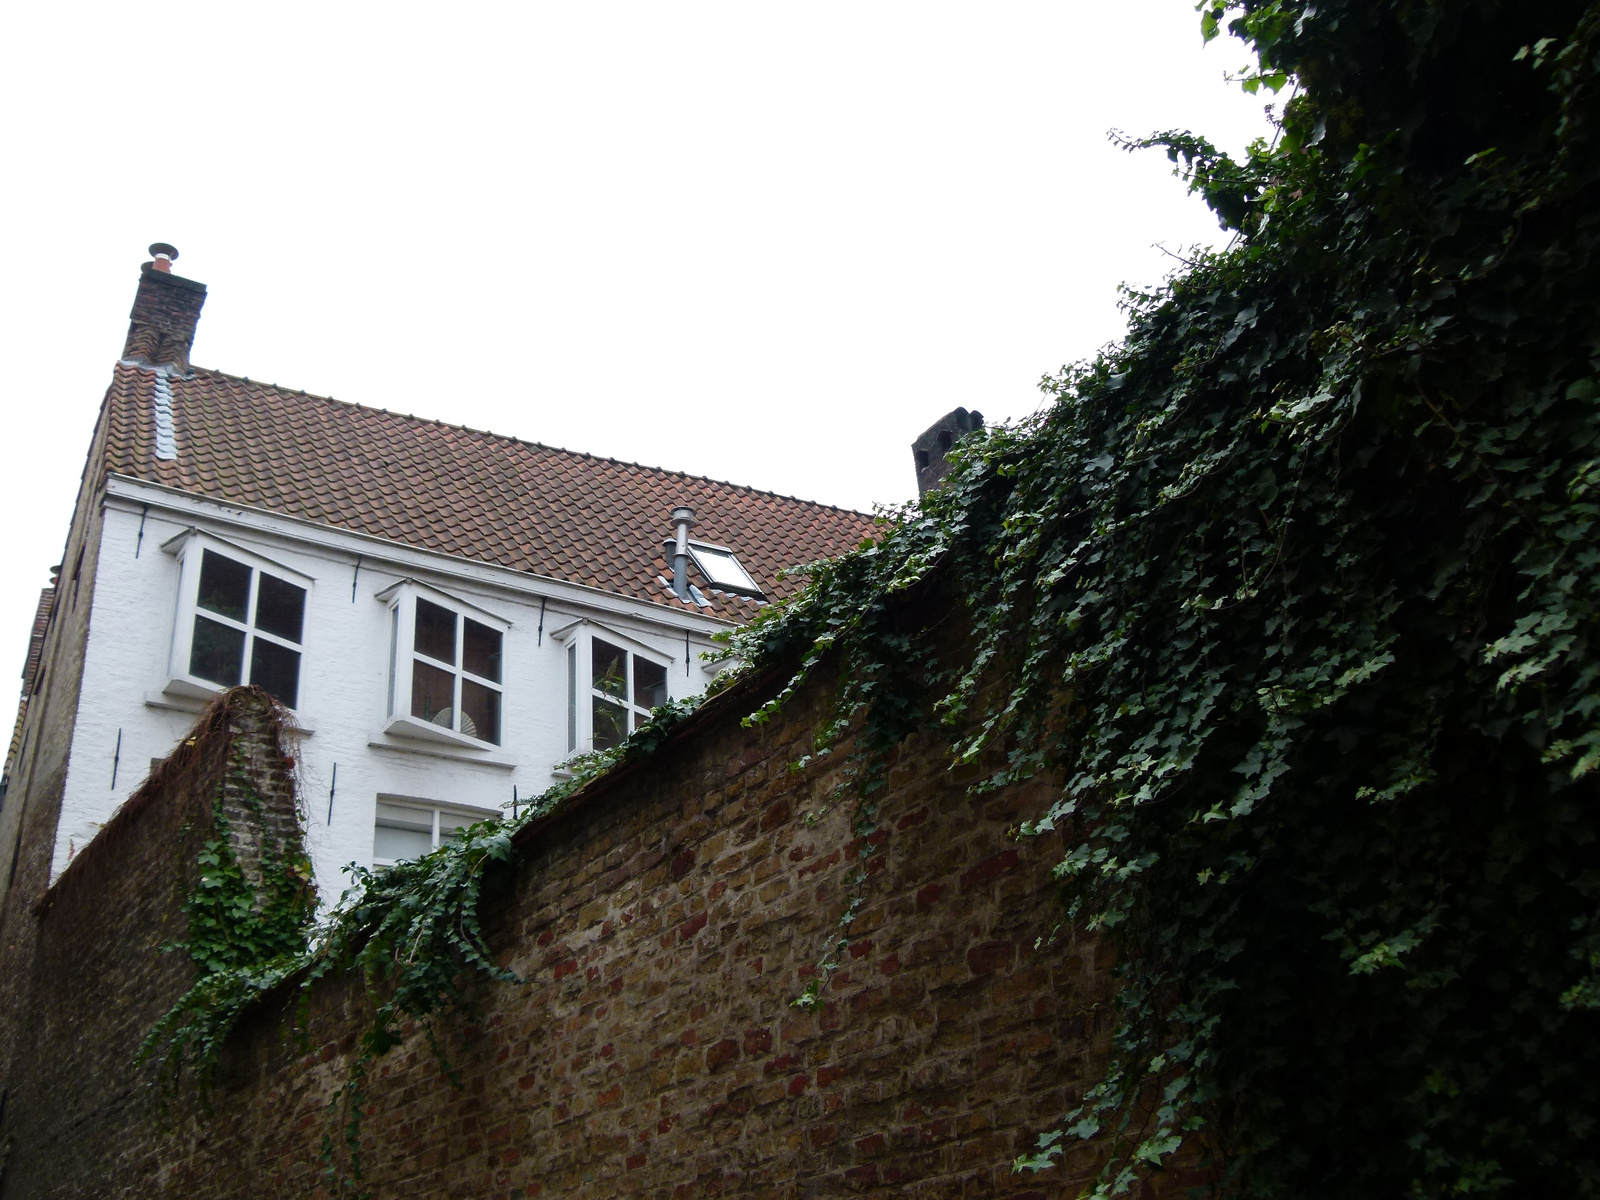 Brugge - ódon falak között (P1280876)